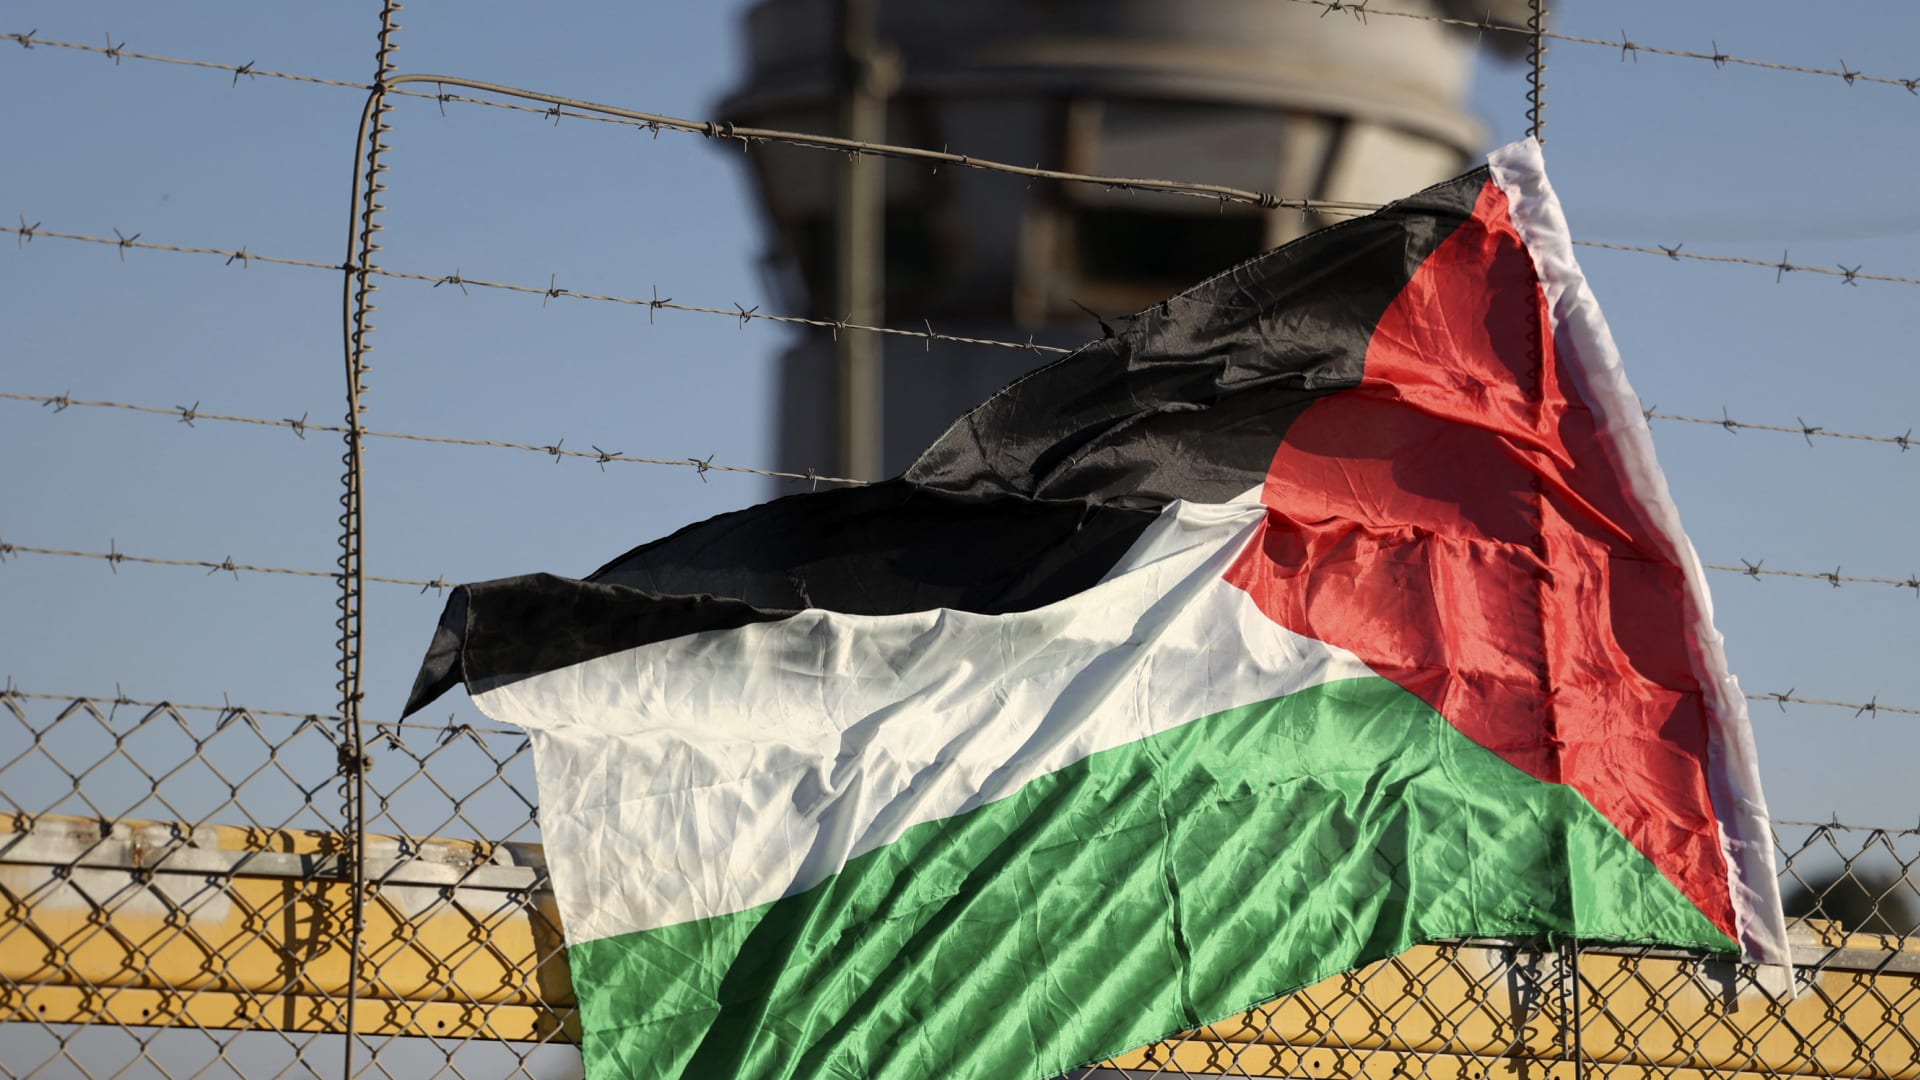 المجلس الوطني الفلسطيني يطالب بالإفراج الفوري عن الأسير أبو حميد والأسرى المرضى